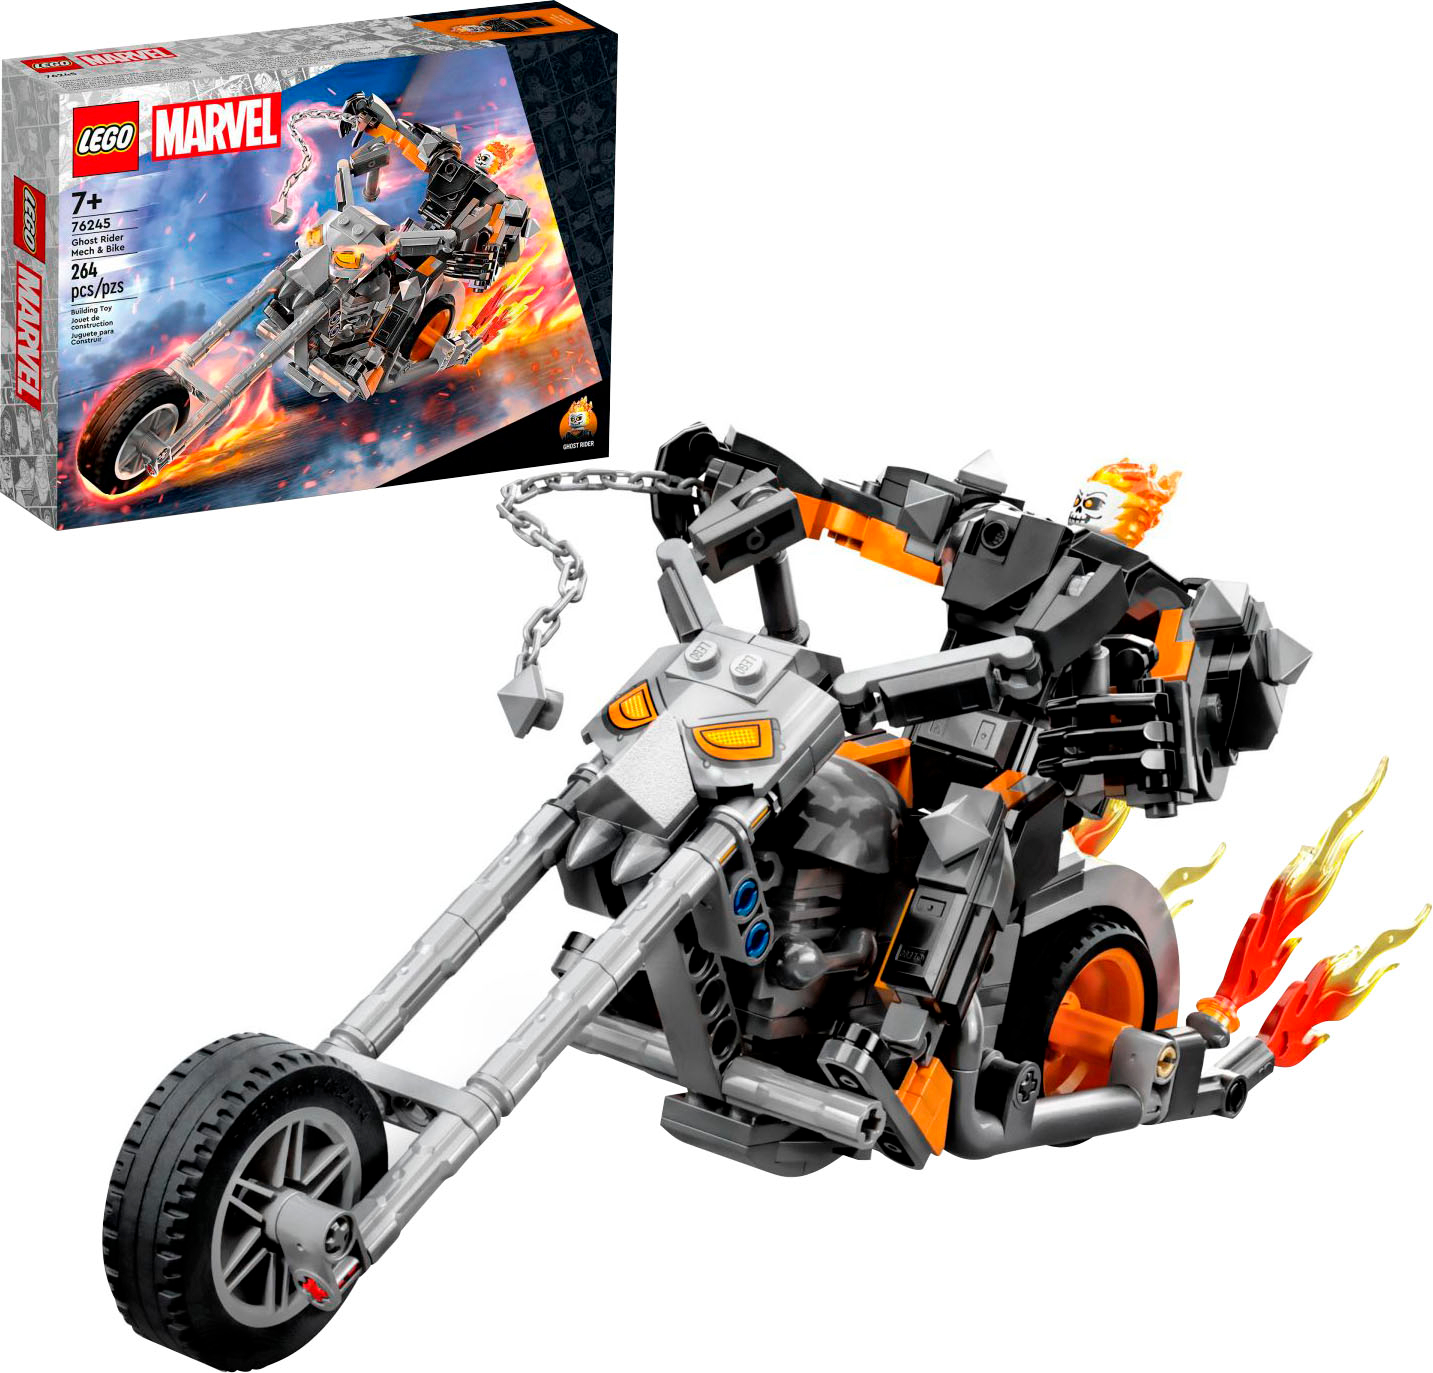 LEGO Speed Champion Wild Speed Nissan Skyline GT-R (R34) 76917 Toy